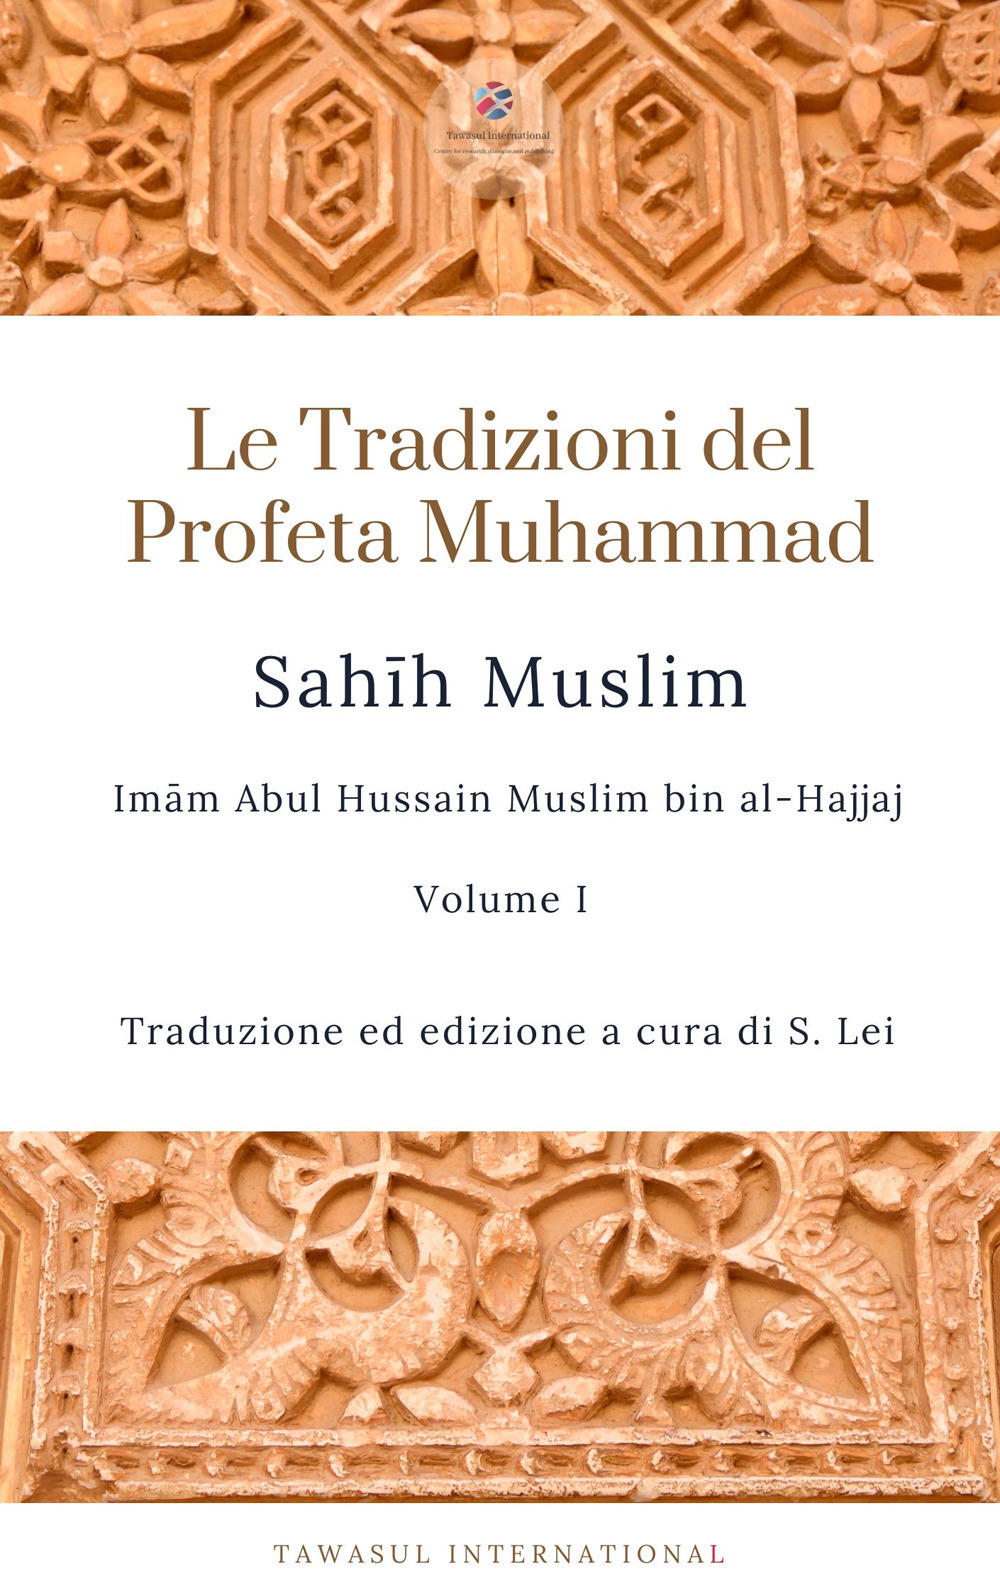 Sahih Muslim. Vol. 1